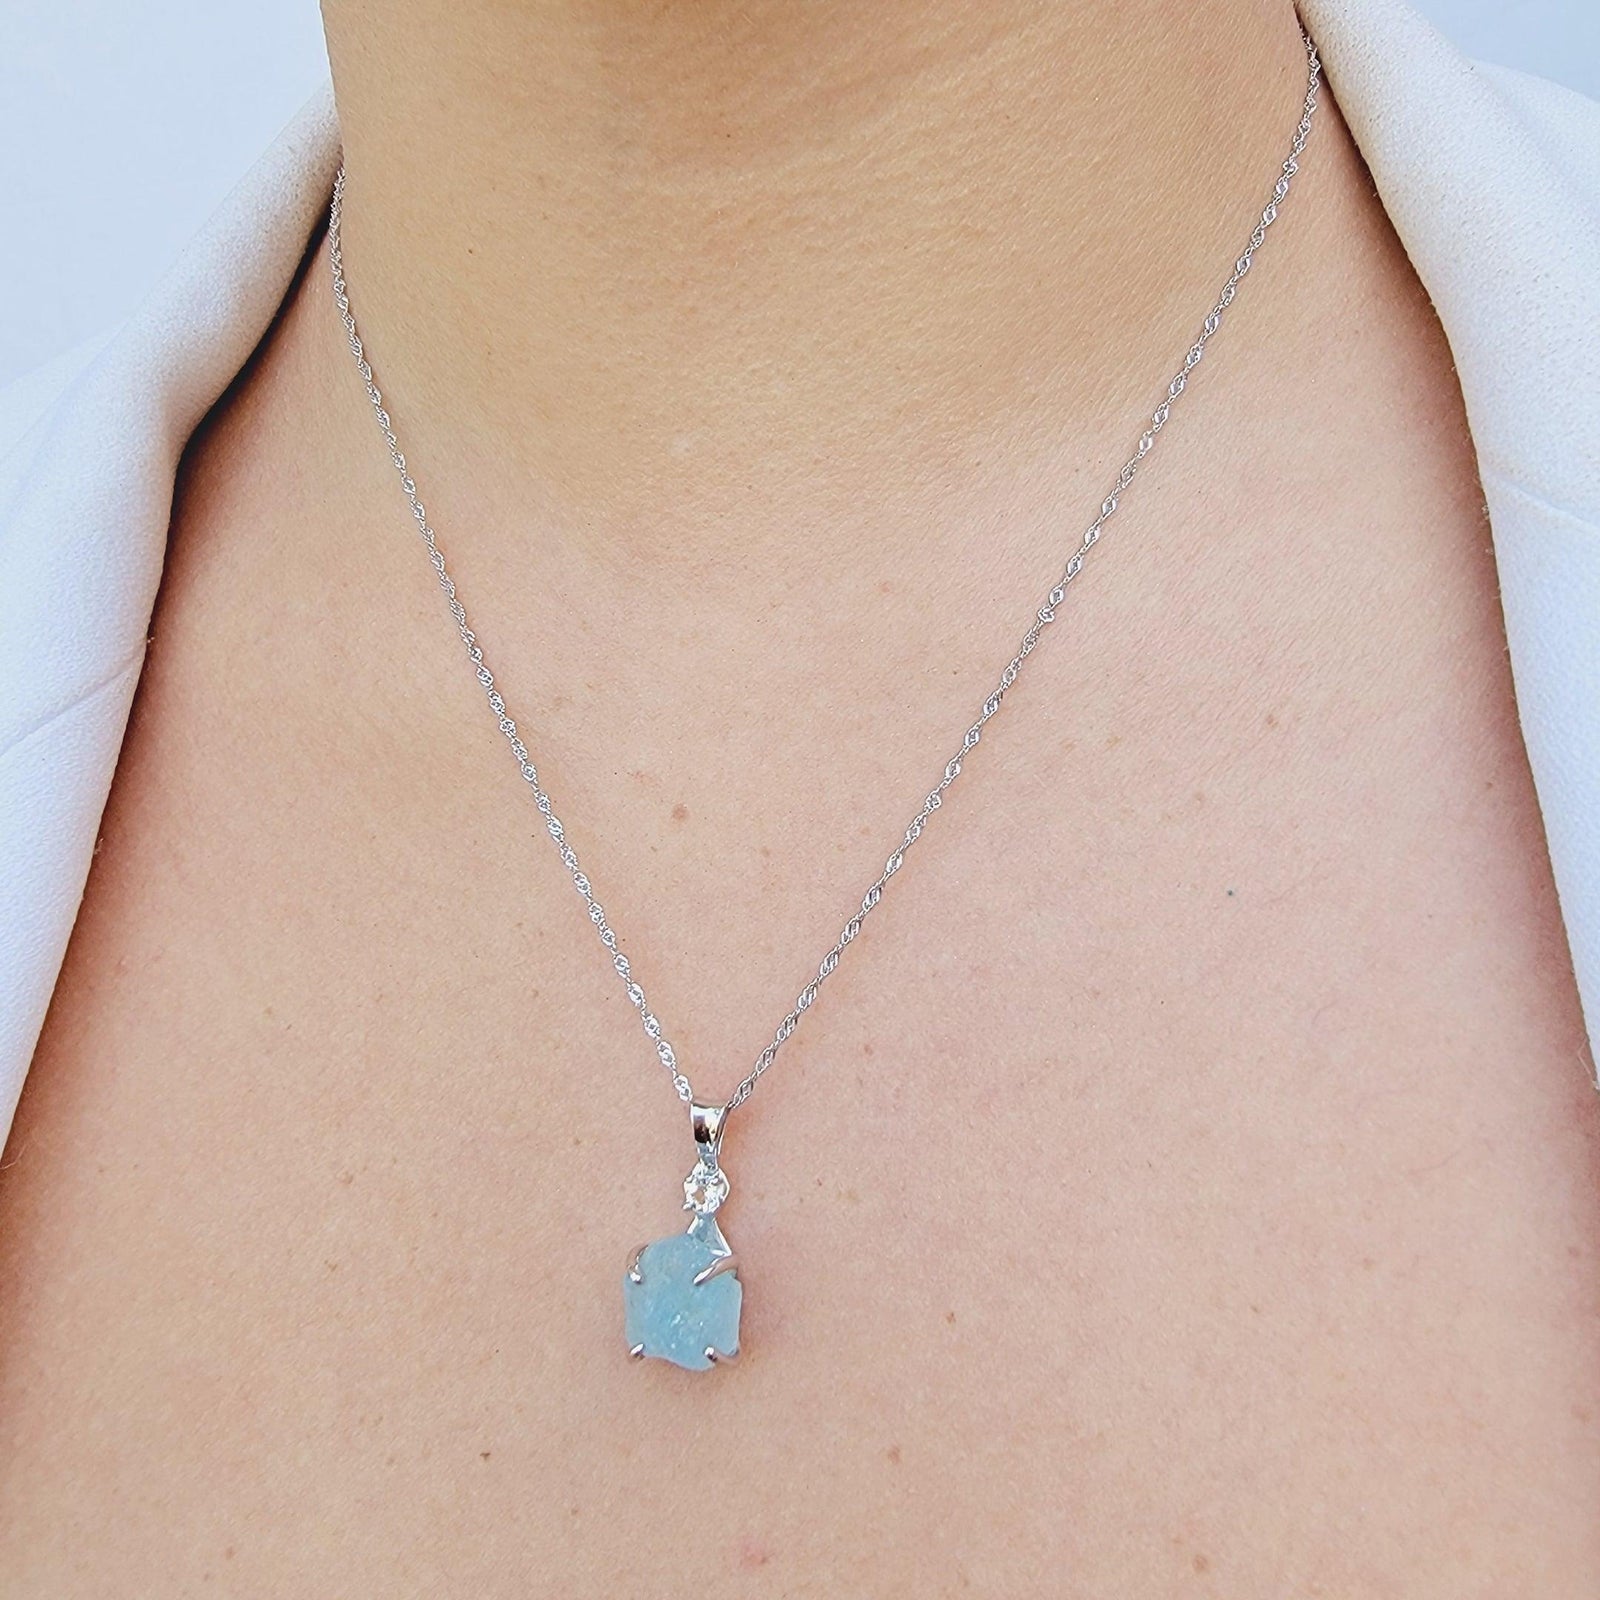 Aquamarine Necklace - Uniquelan Jewelry